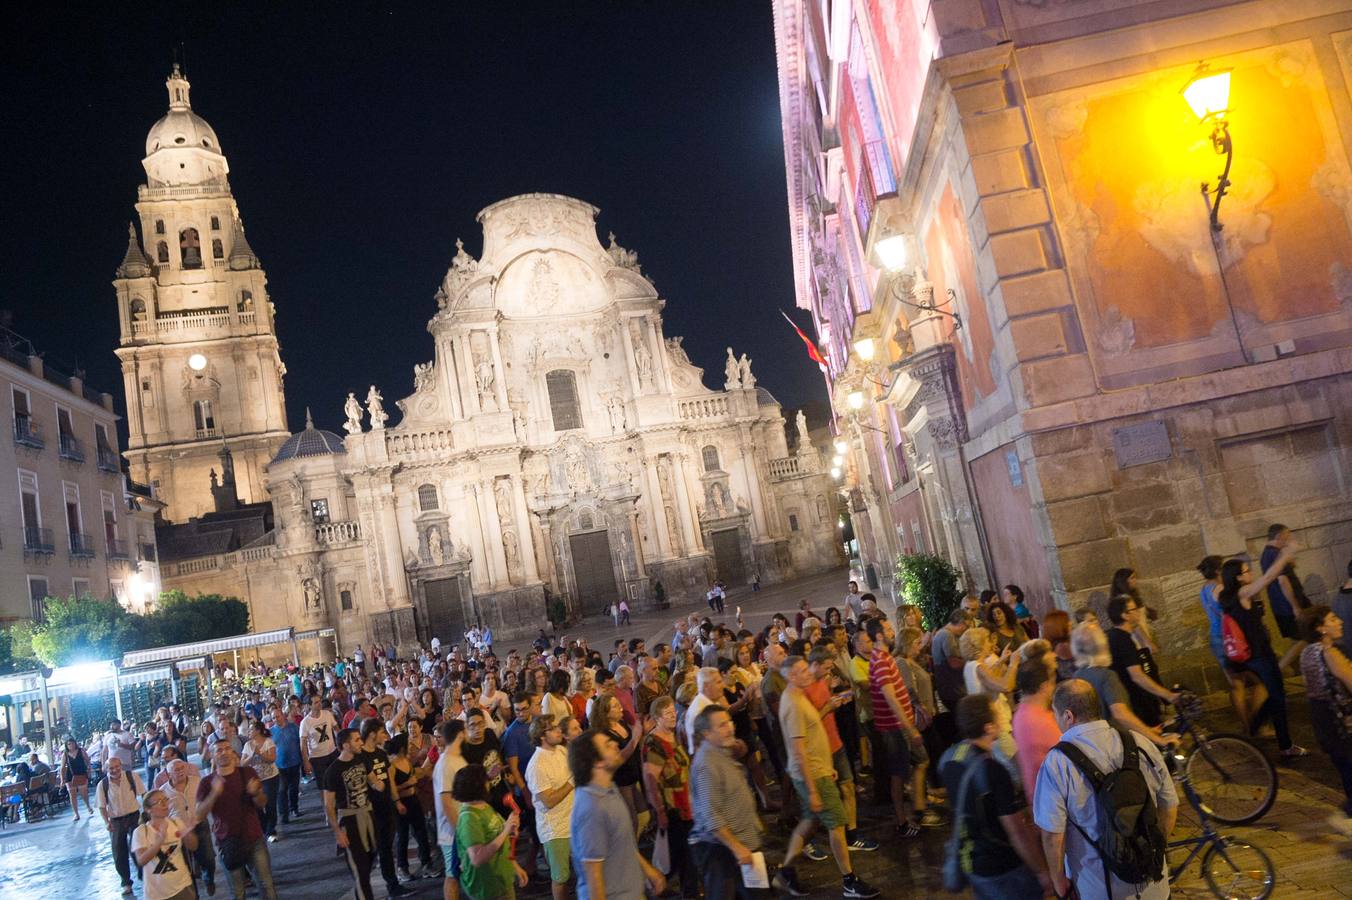 Medio millar de vecinos claman en Murcia por el soterramiento en la vigesimotercera jornada consecutiva de protestas